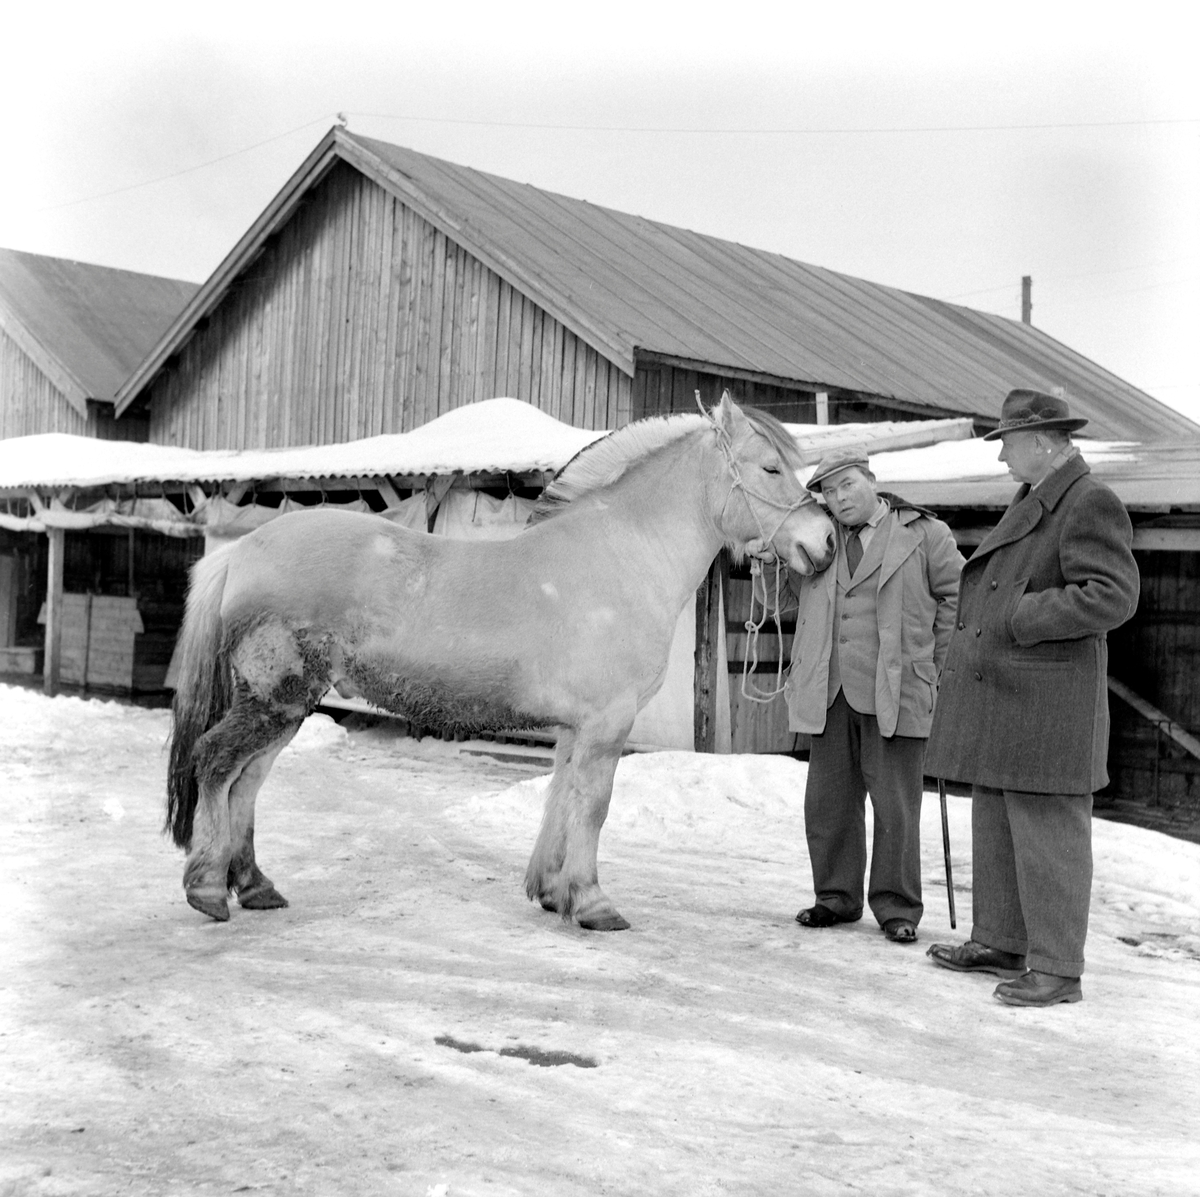 Hestehandlerne Anders Persson fra Østersund og Ivar Sæther fra Hellesylt ved Handelsfjøset